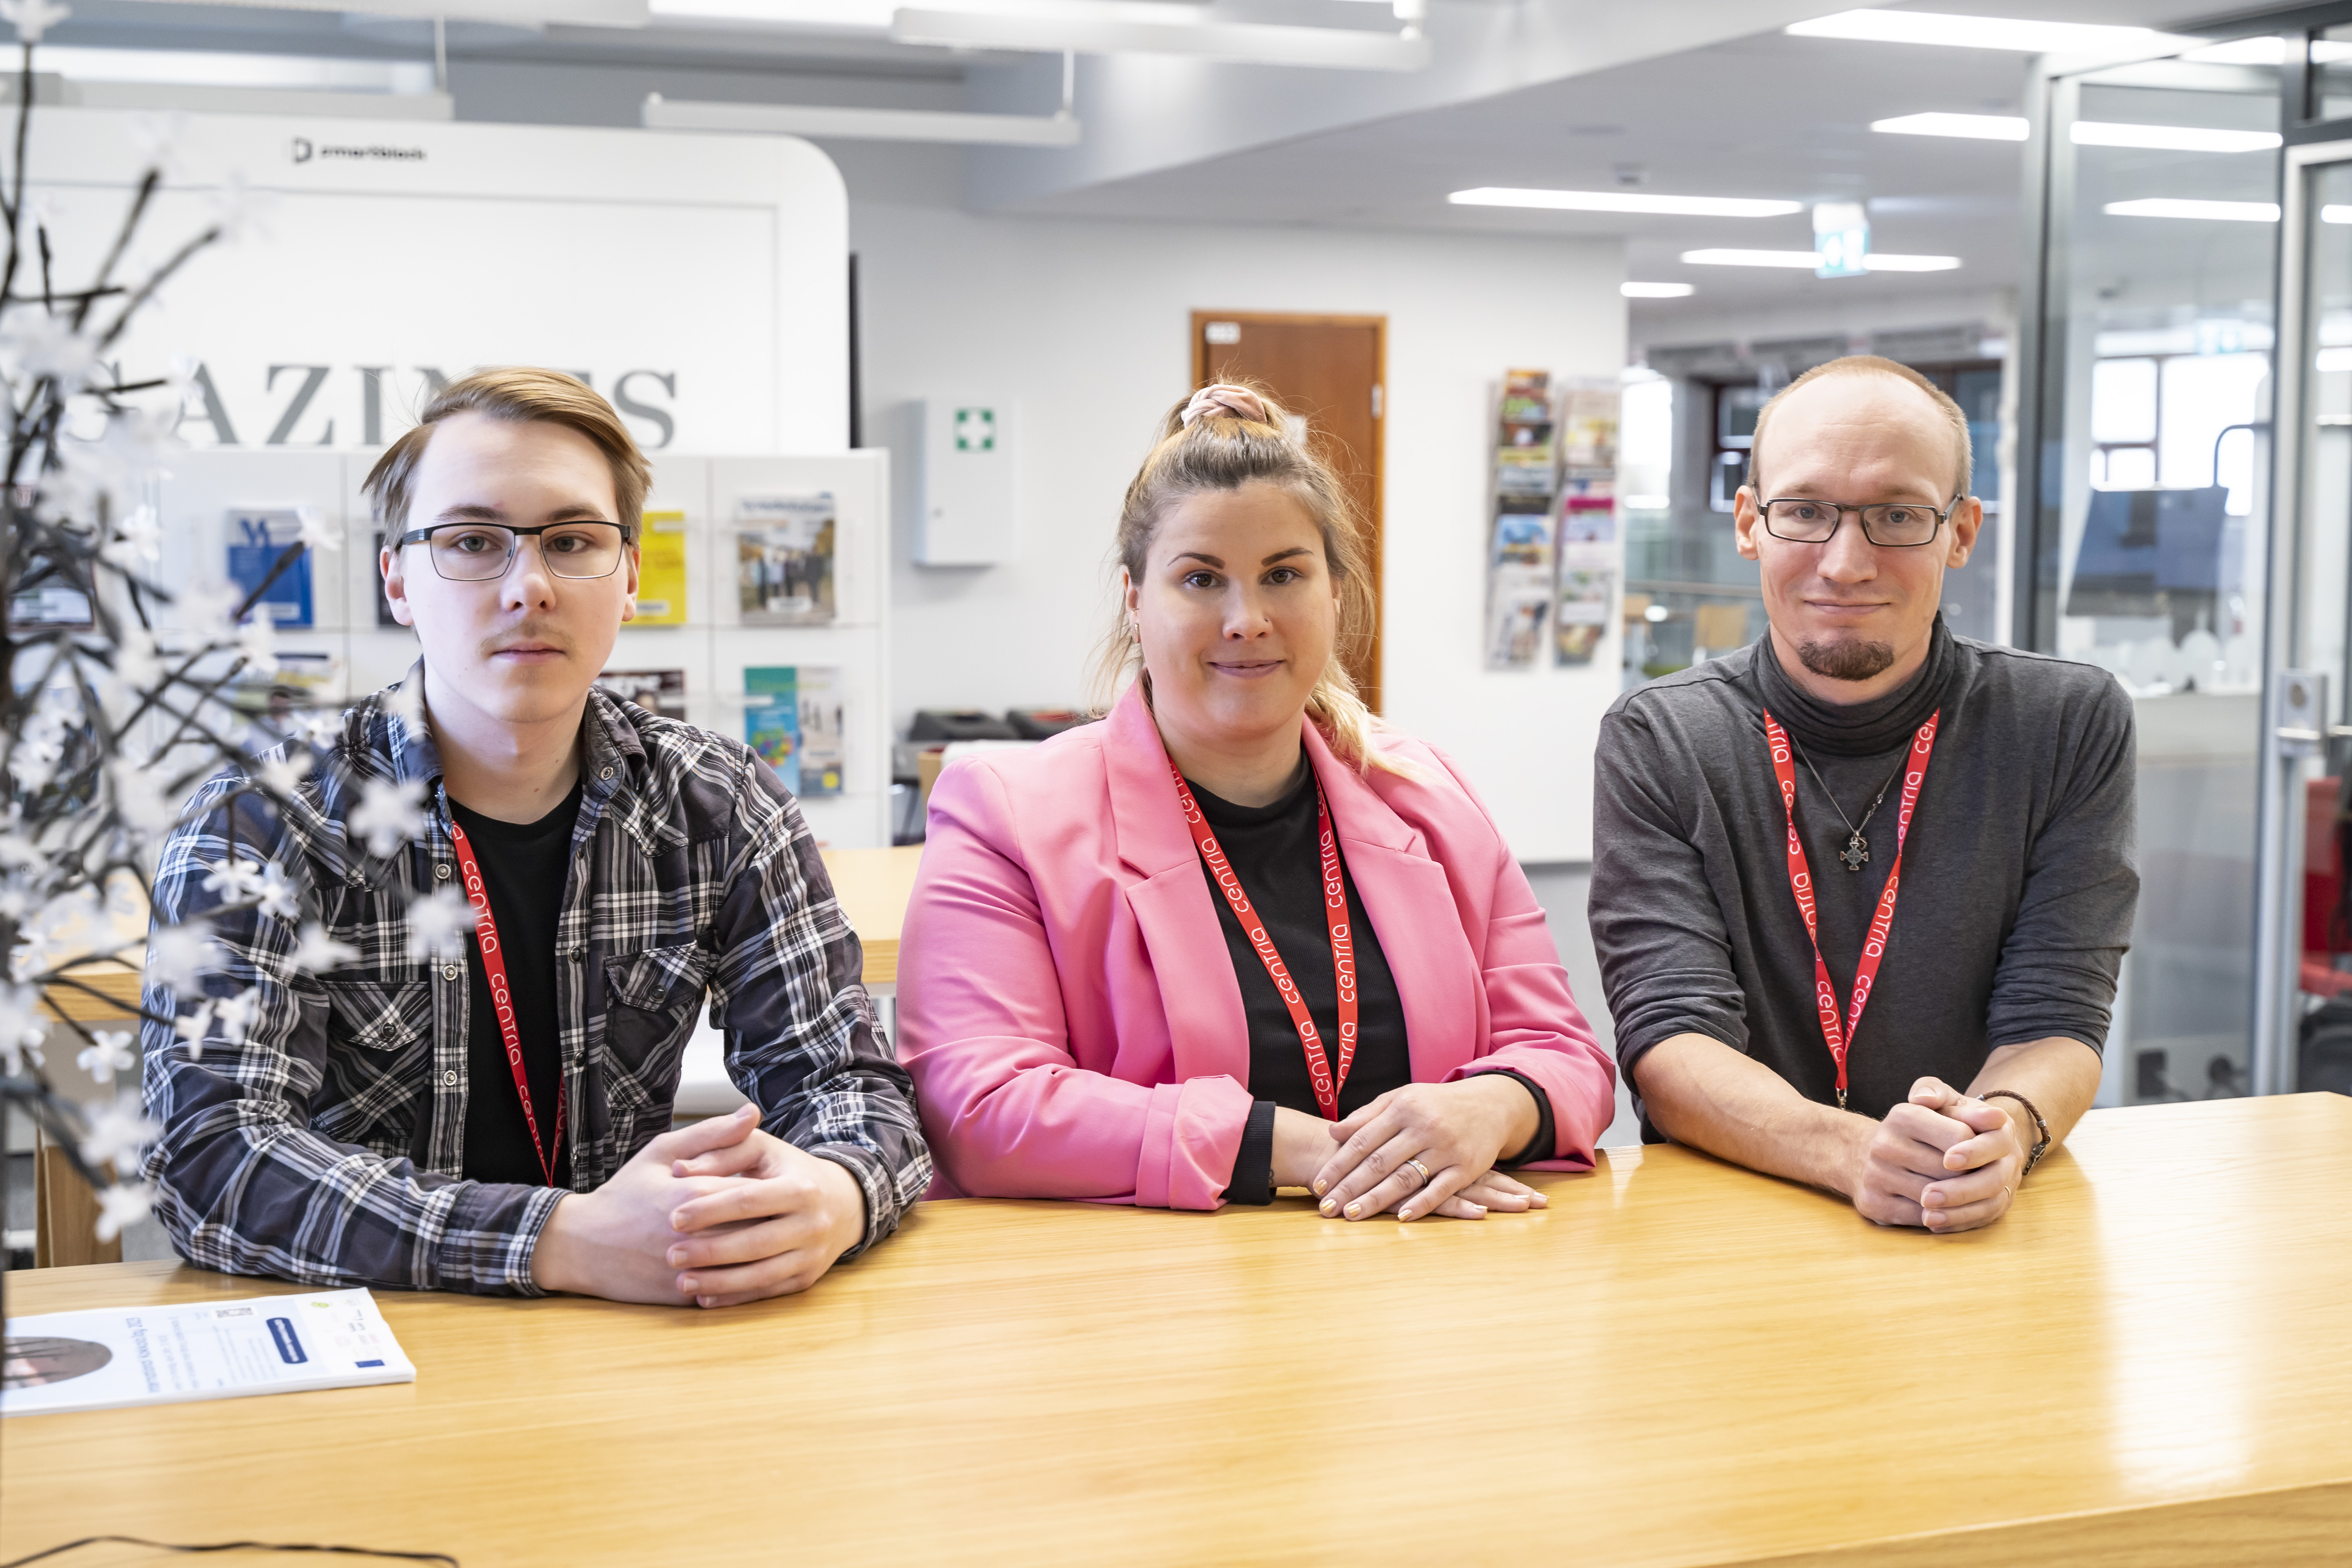 TKI-opiskelija-assistentit ensimmäisellä työviikolla pöydän ääressä. Vasemmalta oikealle Miro Poikkijoki, Kaisa Fält ja Jan-Mikael Vähä-Kungas.